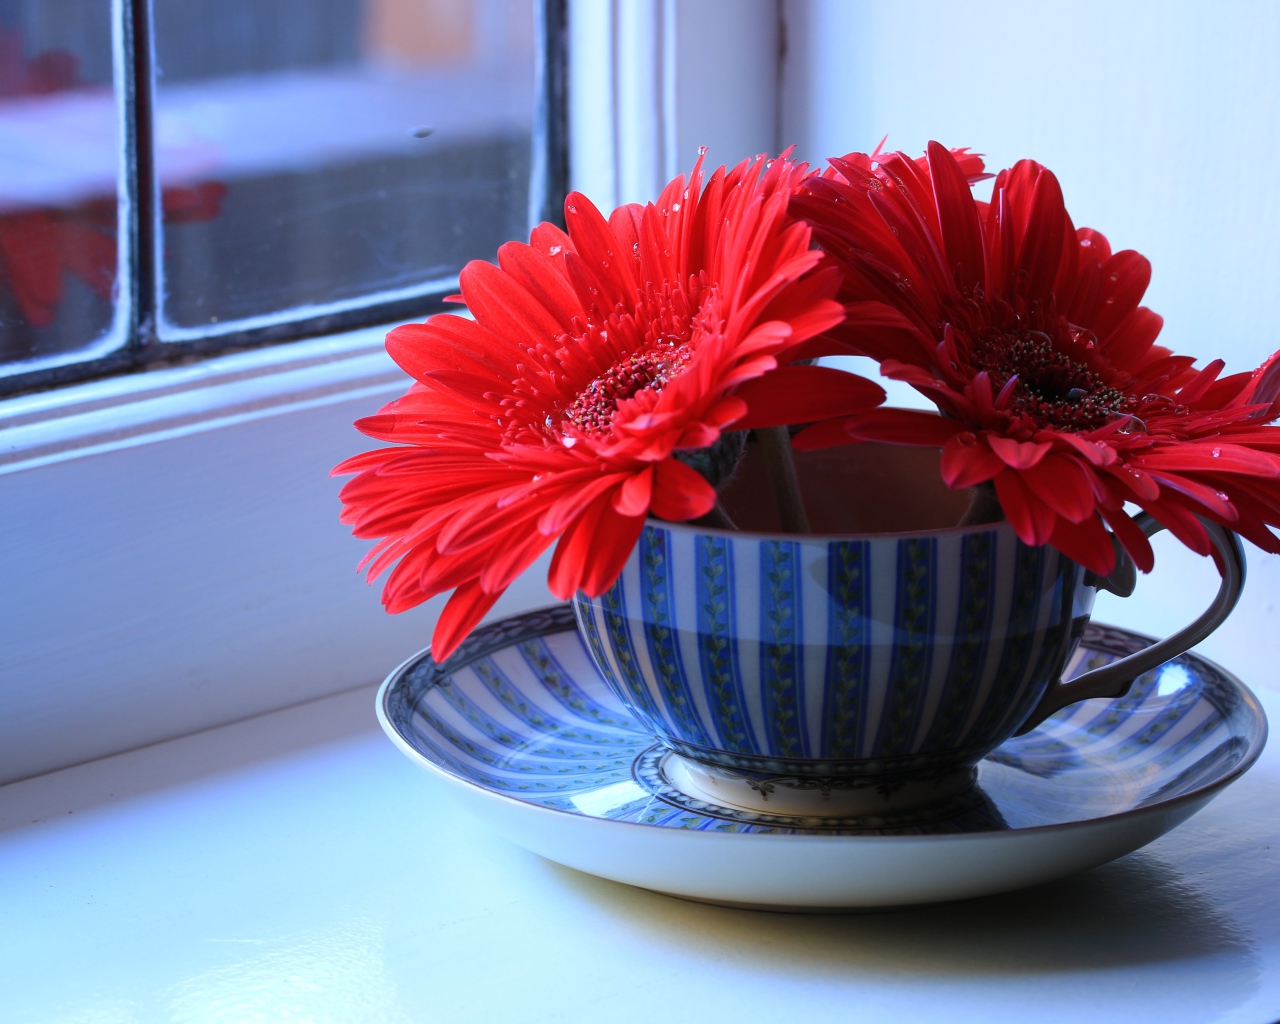 Три цветка красной герберы в чашке на подоконнике 